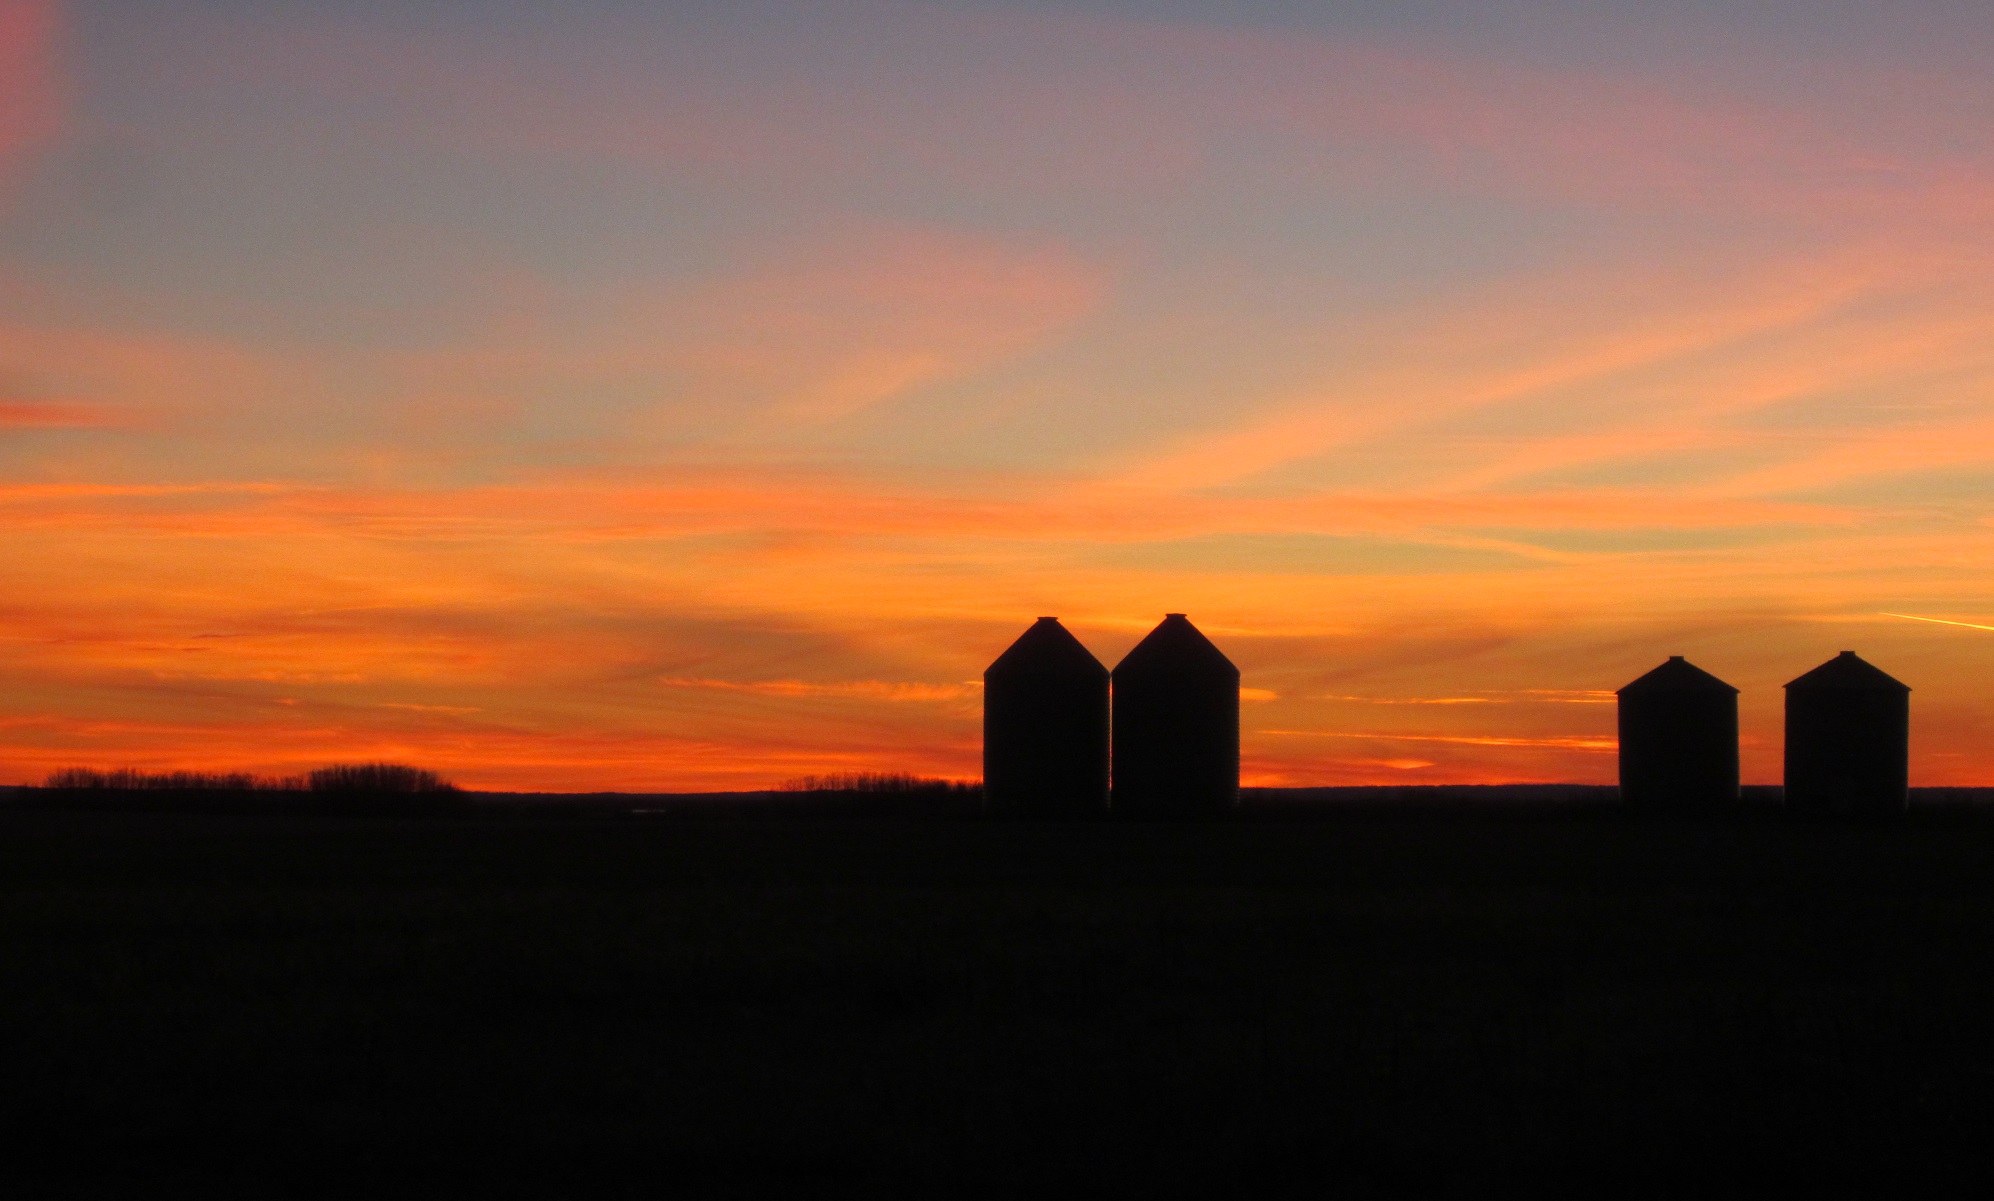 4 prairie bins during a sunset.